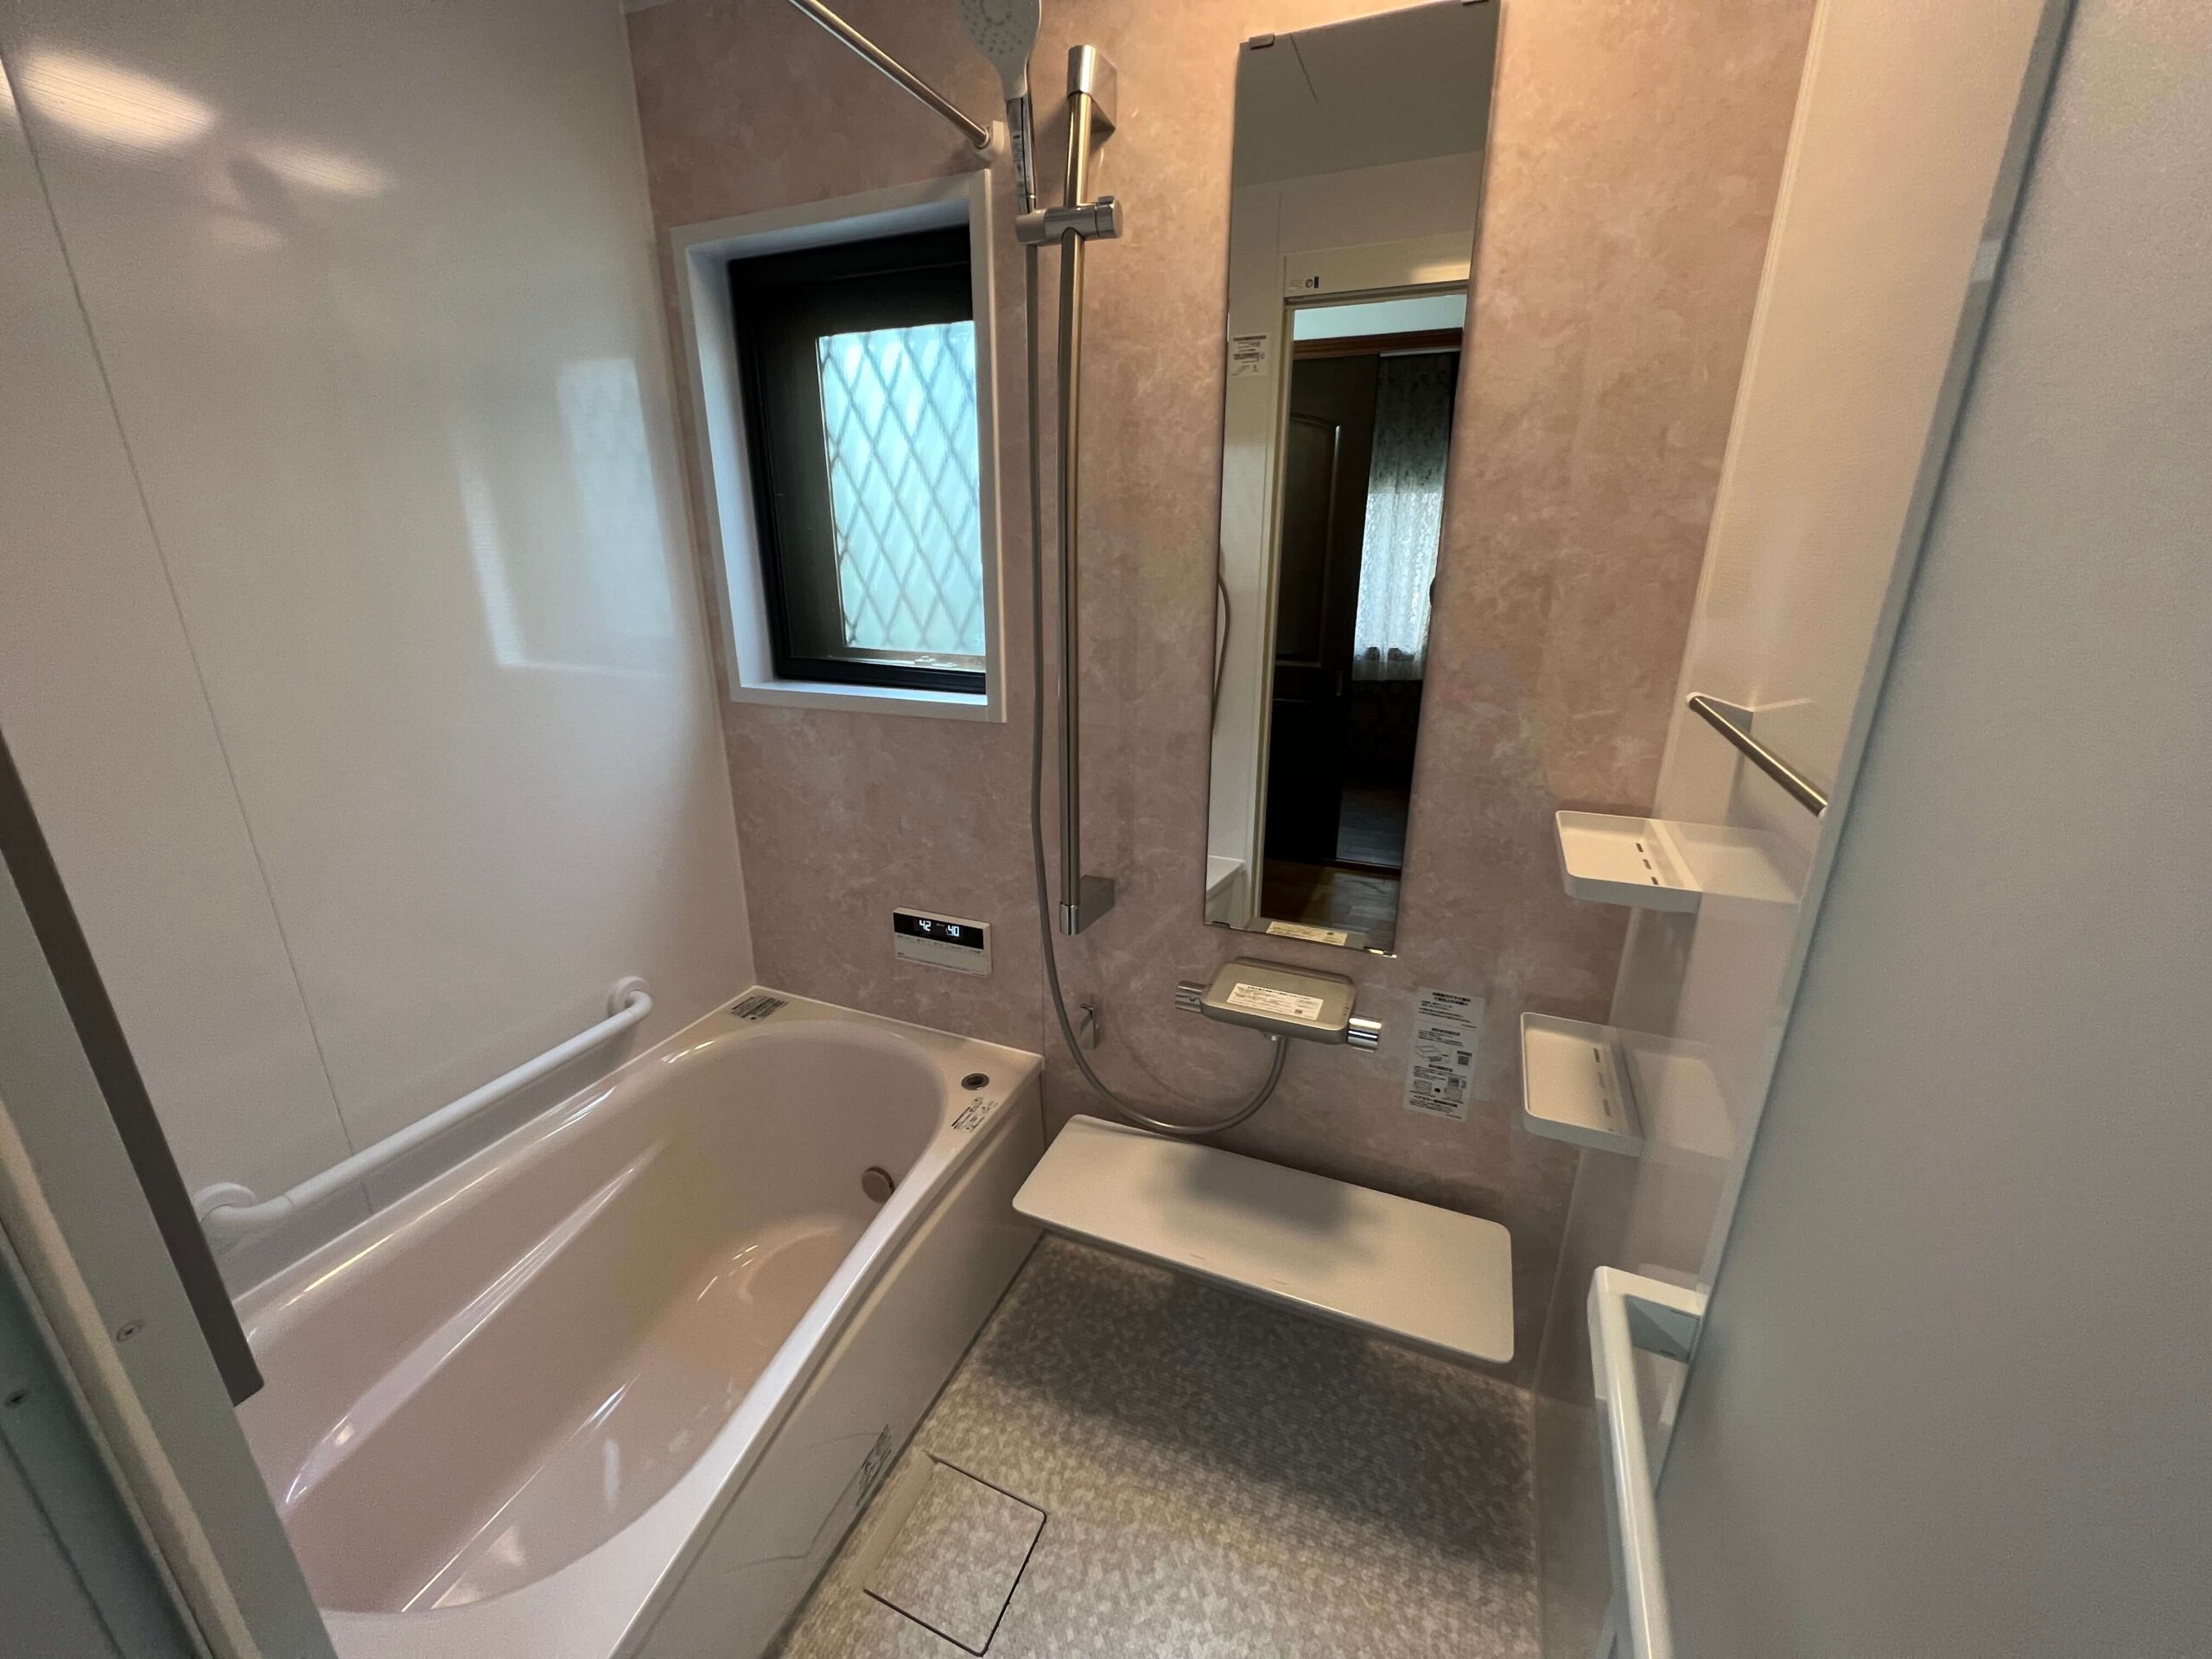 神戸市須磨区の浴室リフォーム施工事例を公開しました